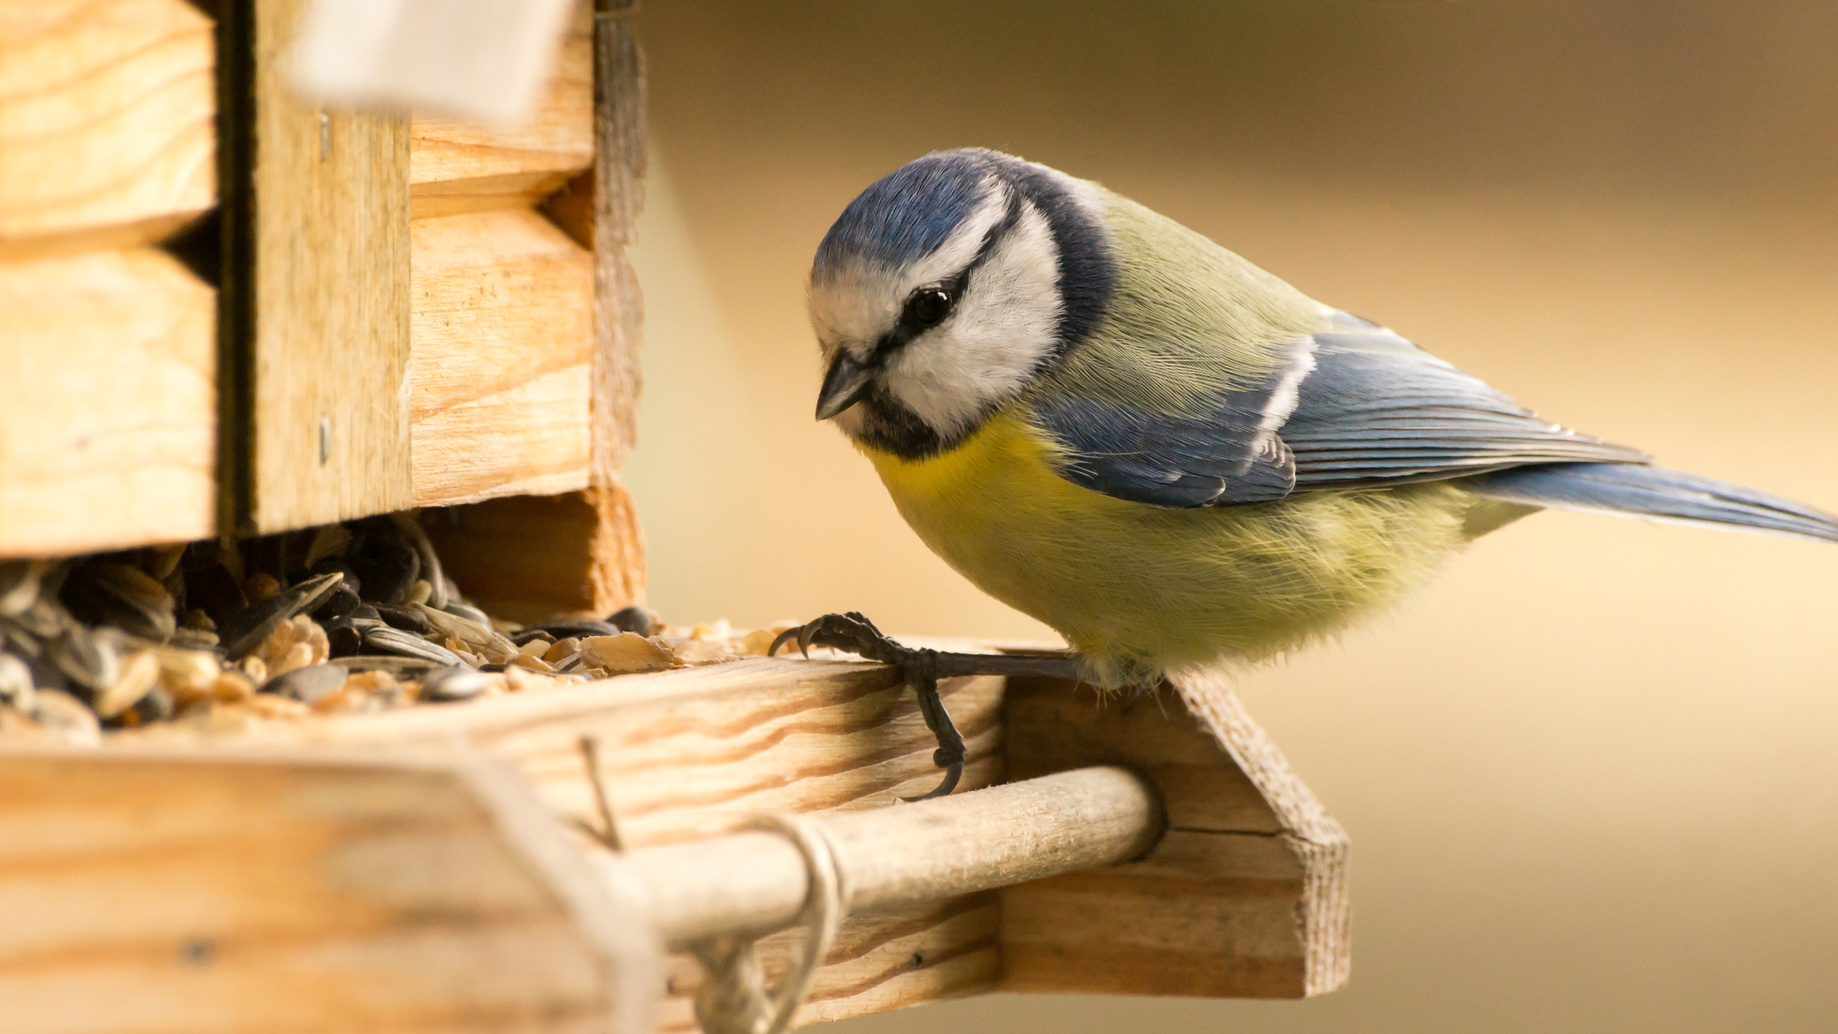 Si le nourrissage des oiseaux est relativement consensuel en hiver, il est plus controversé en été. © moquai86, fotolia